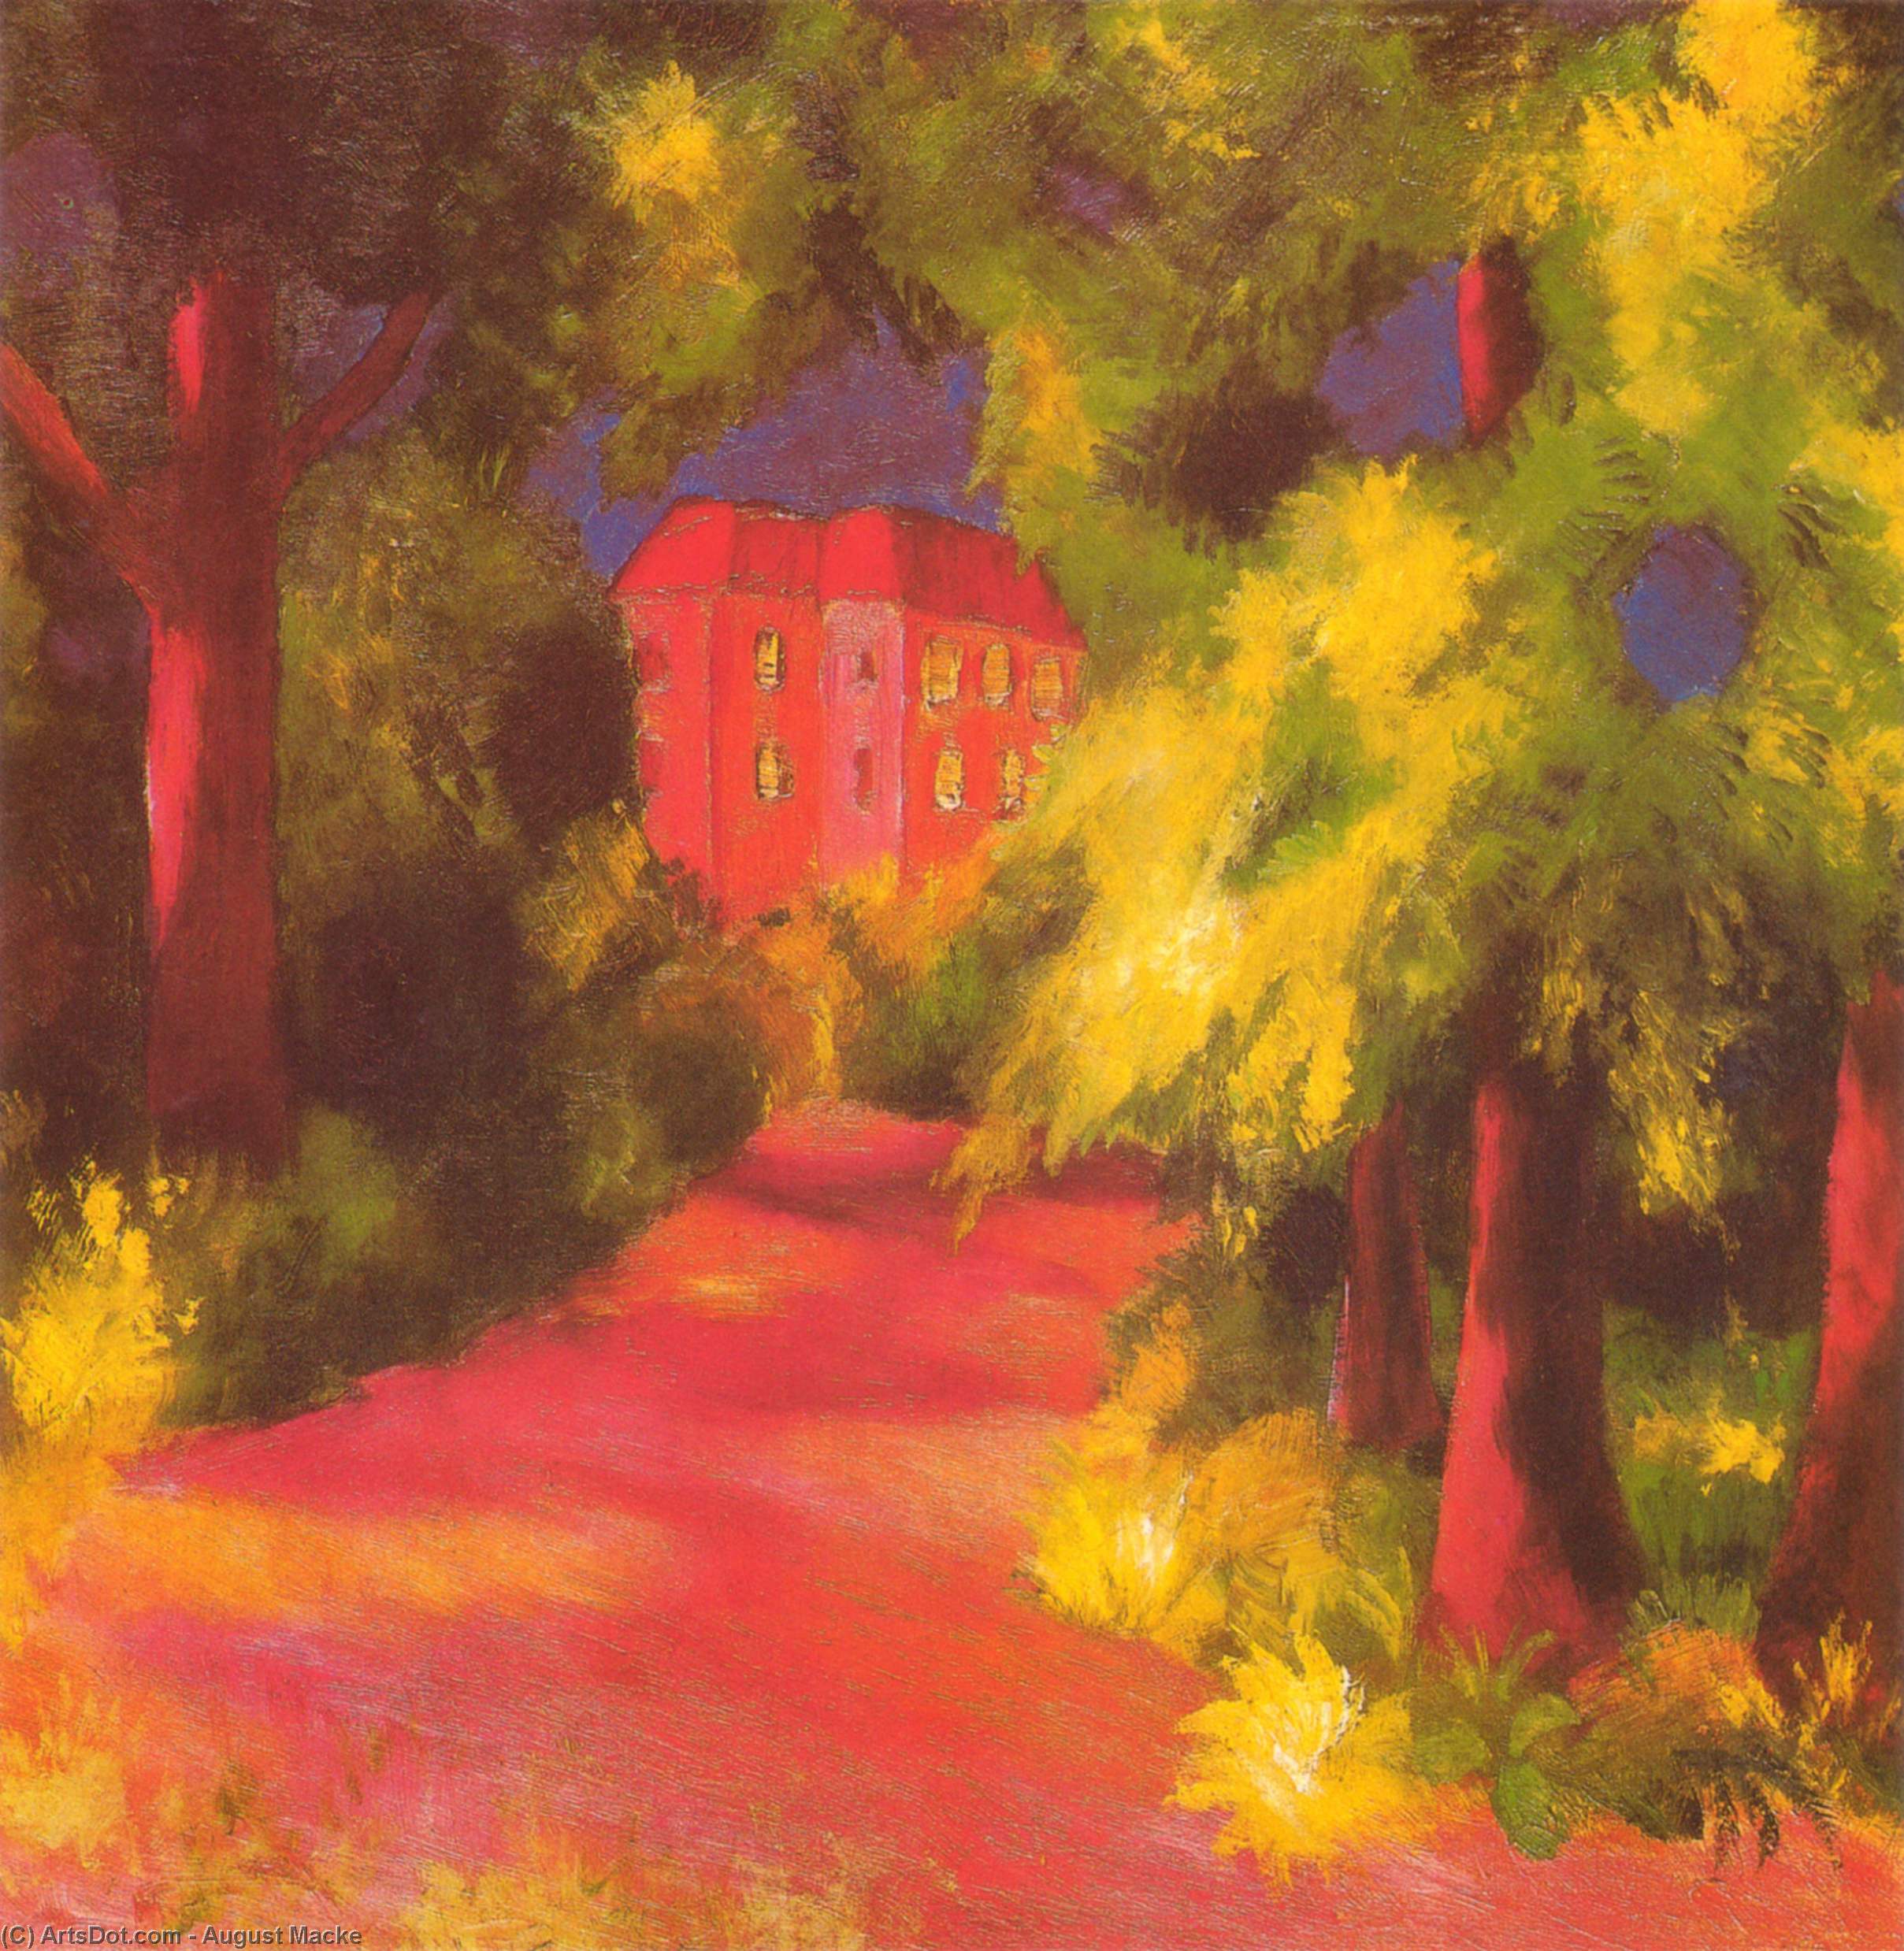 WikiOO.org - Εγκυκλοπαίδεια Καλών Τεχνών - Ζωγραφική, έργα τέχνης August Macke - Red House in a Park